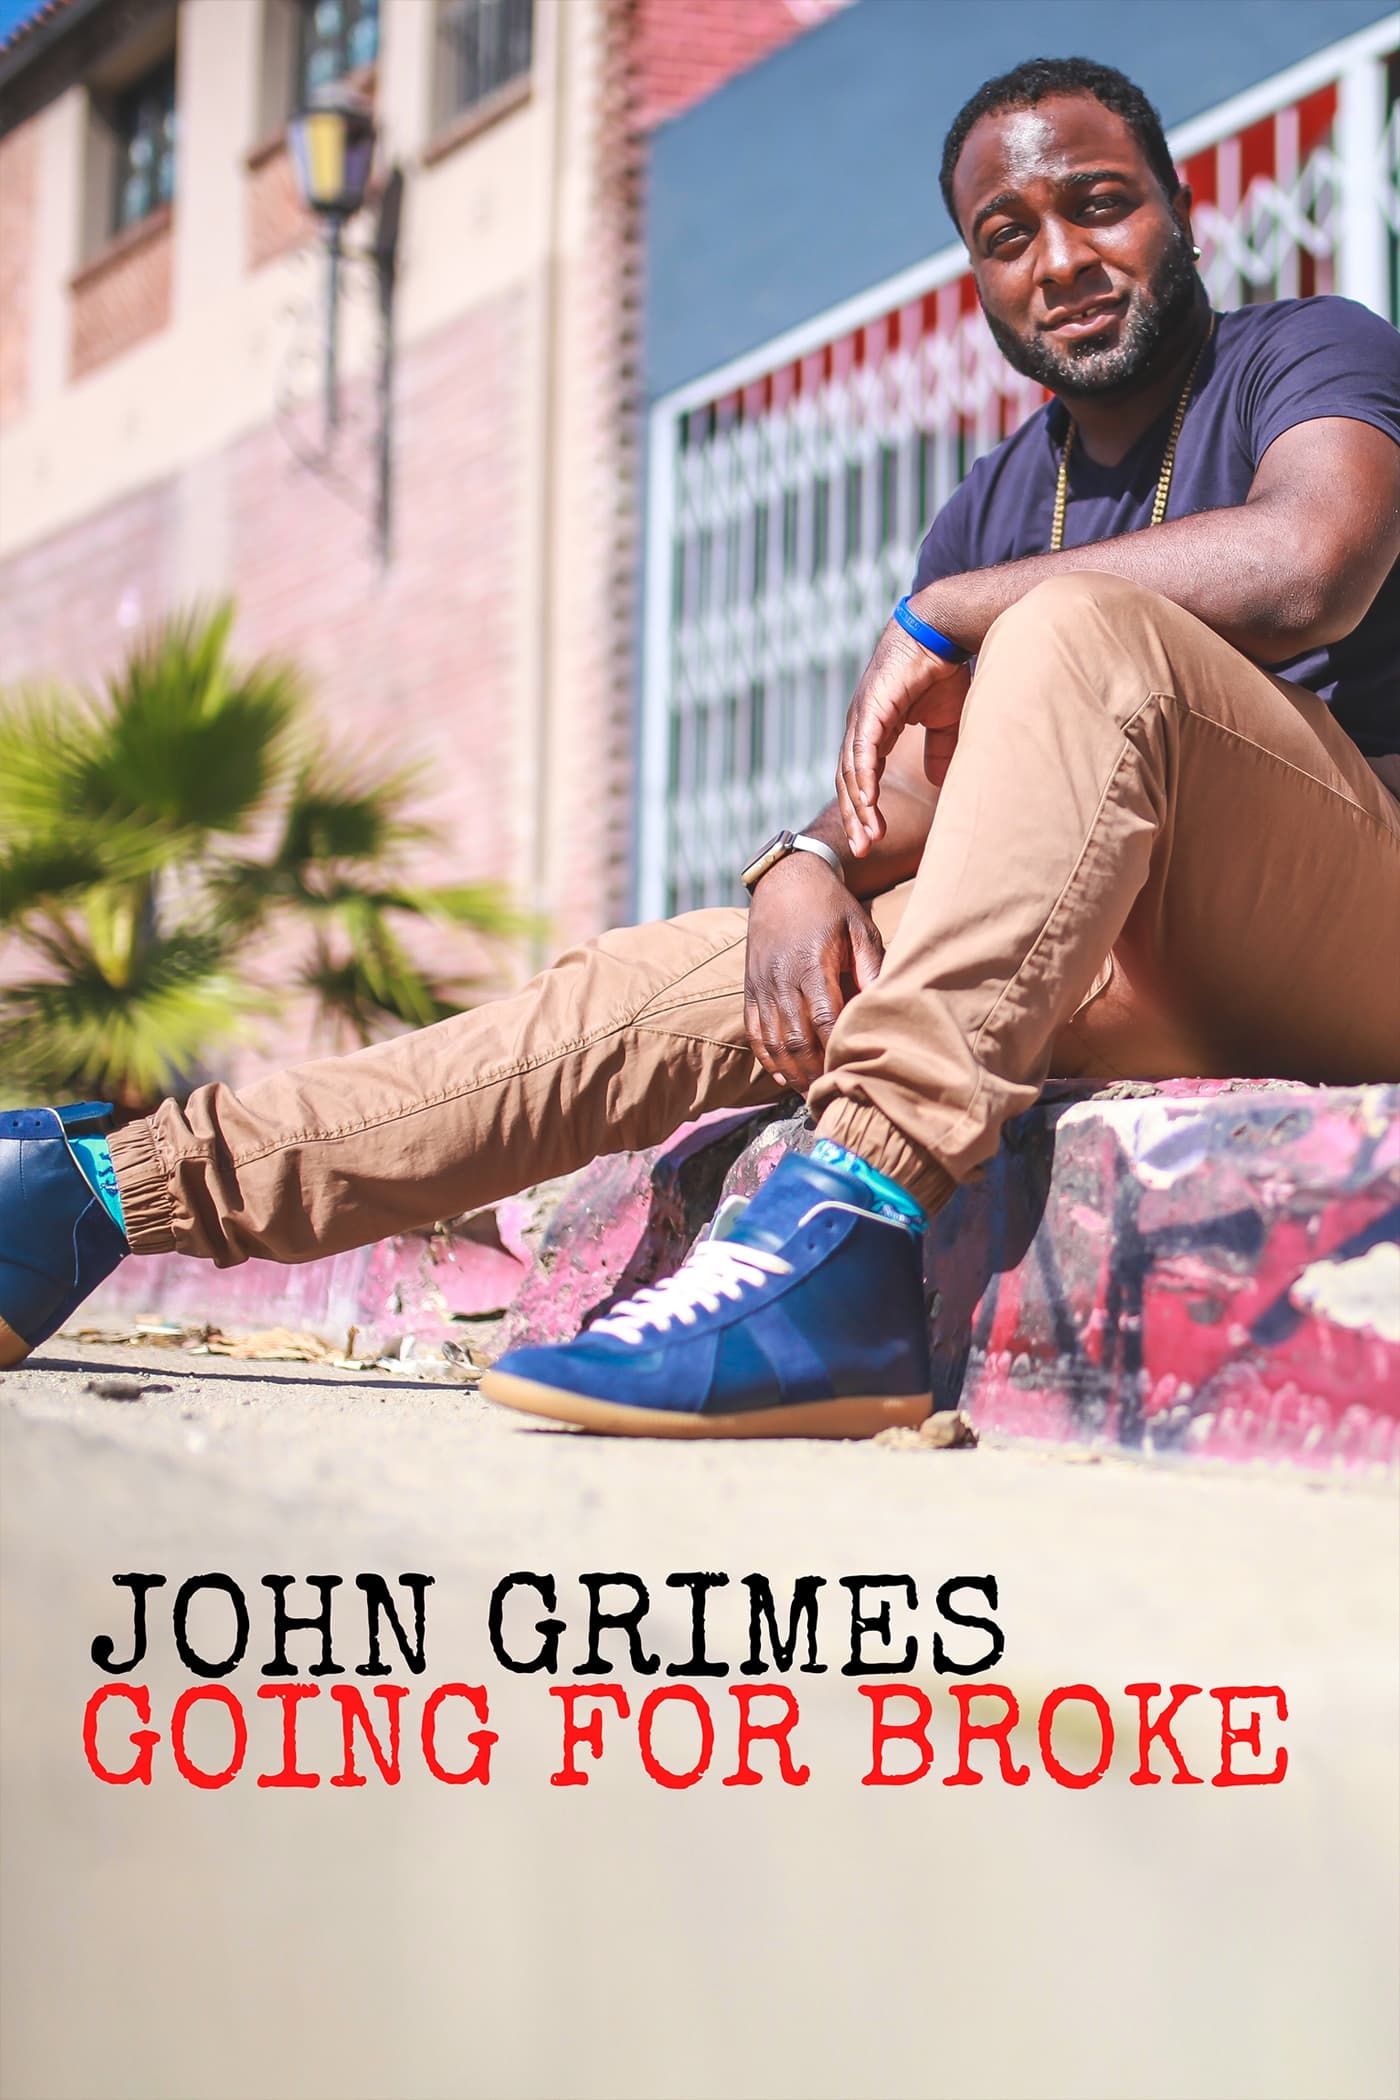 John Grimes: Going For Broke